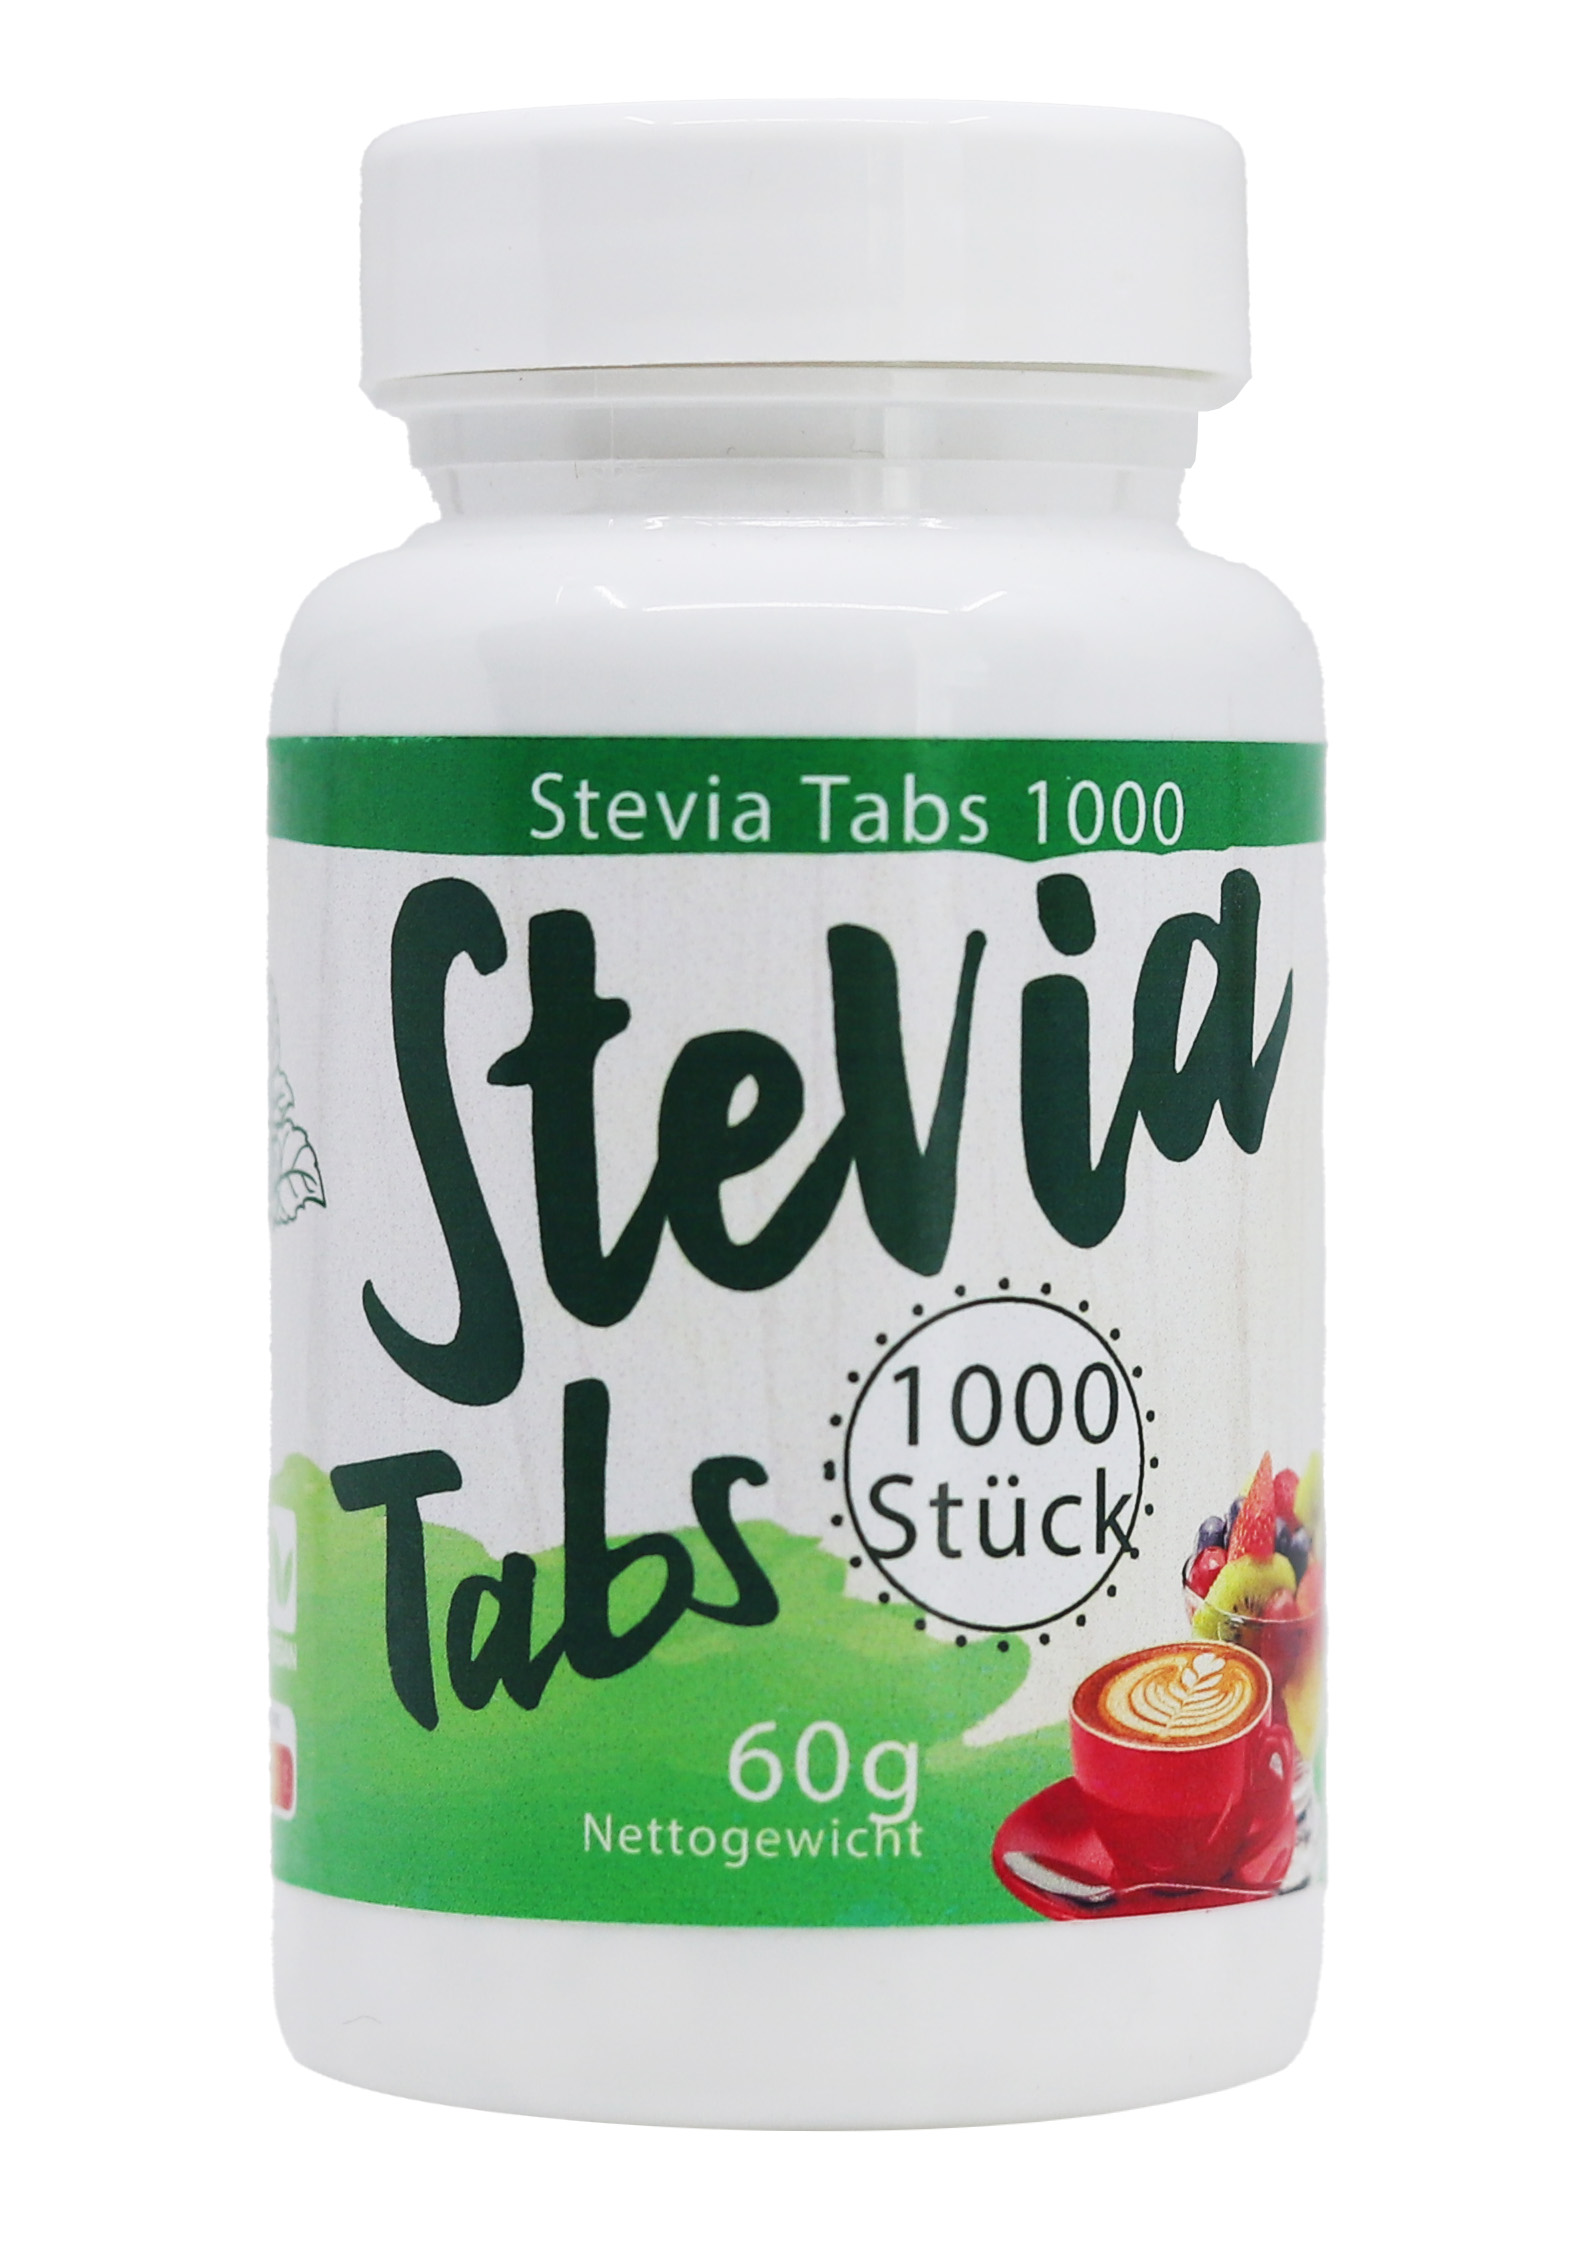 El Compra Steviola - Stévia tablety 1000tbl. 1 ks: 1000 ks